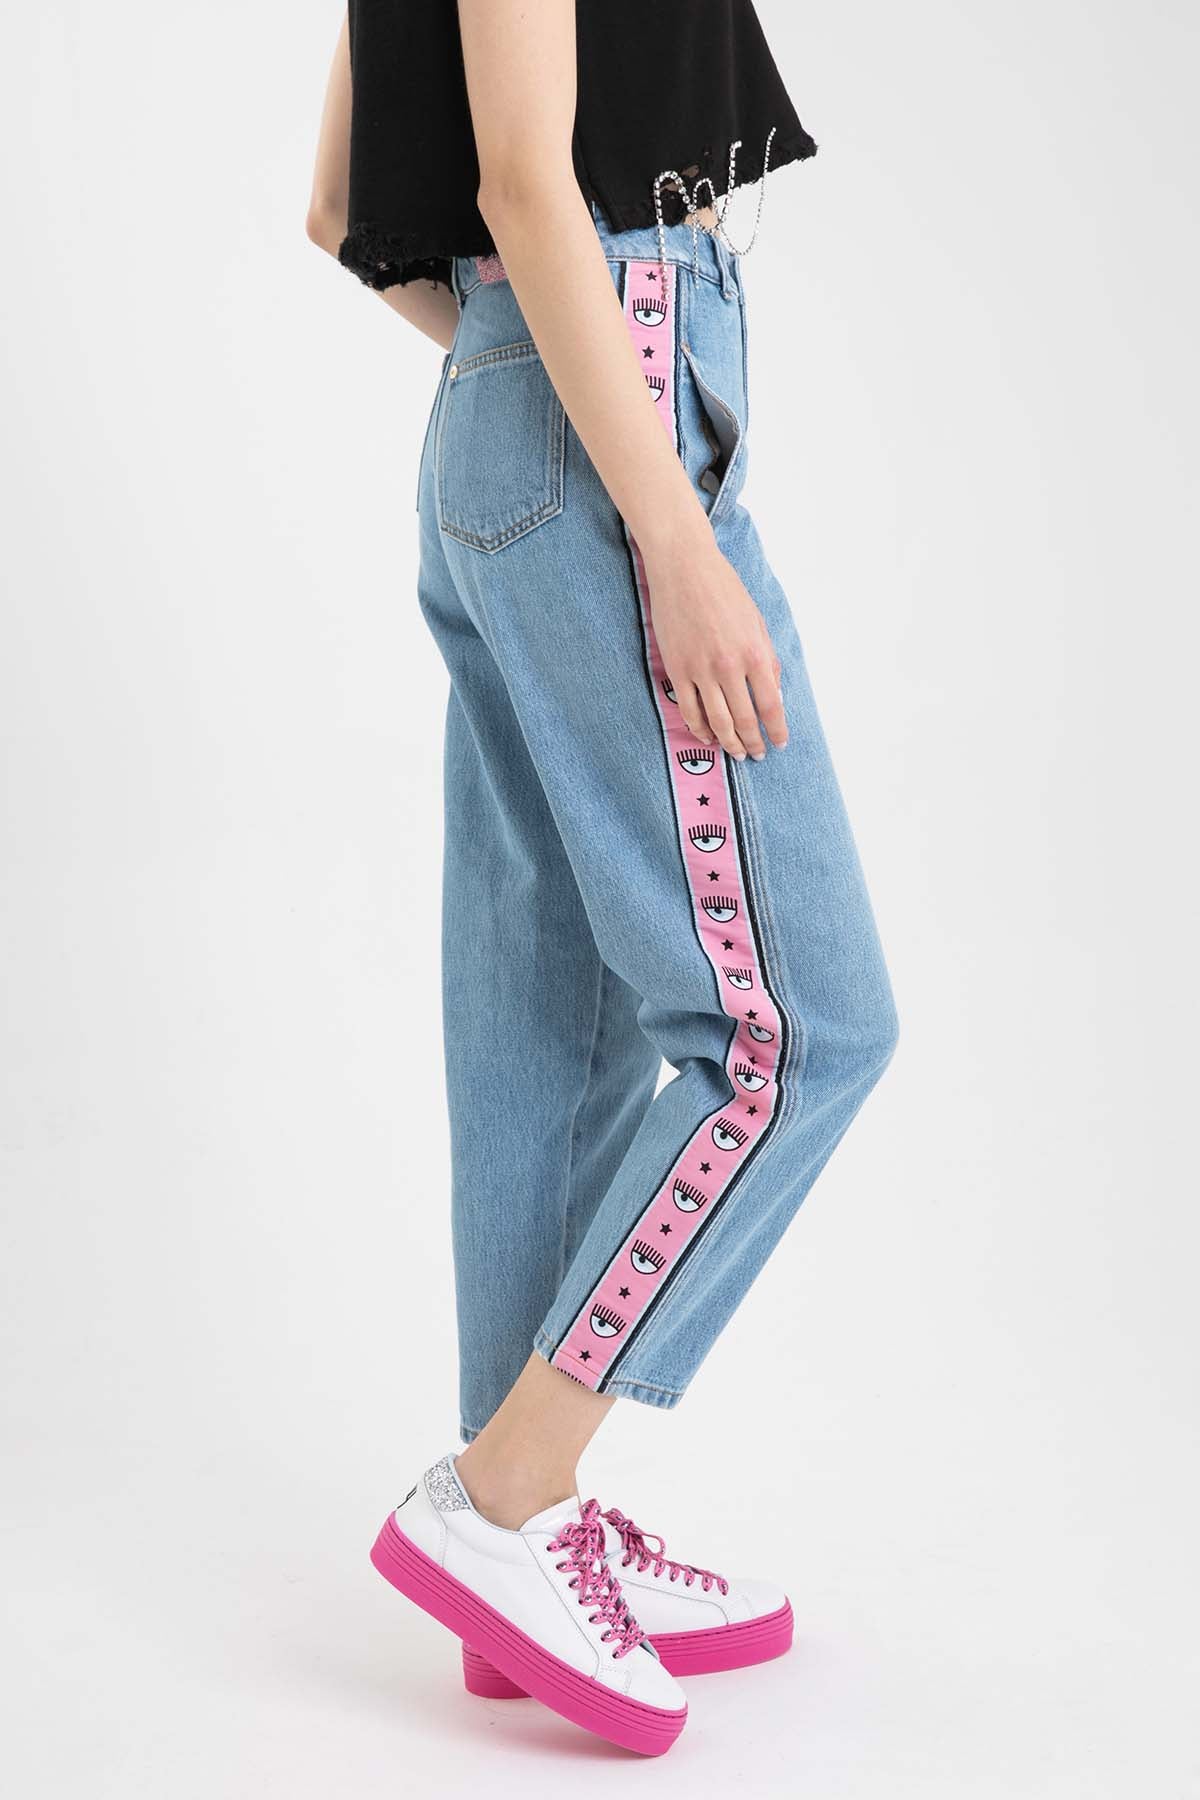 Chiara Ferragni Boyfriend Yüksek Bel Jeans-Libas Trendy Fashion Store